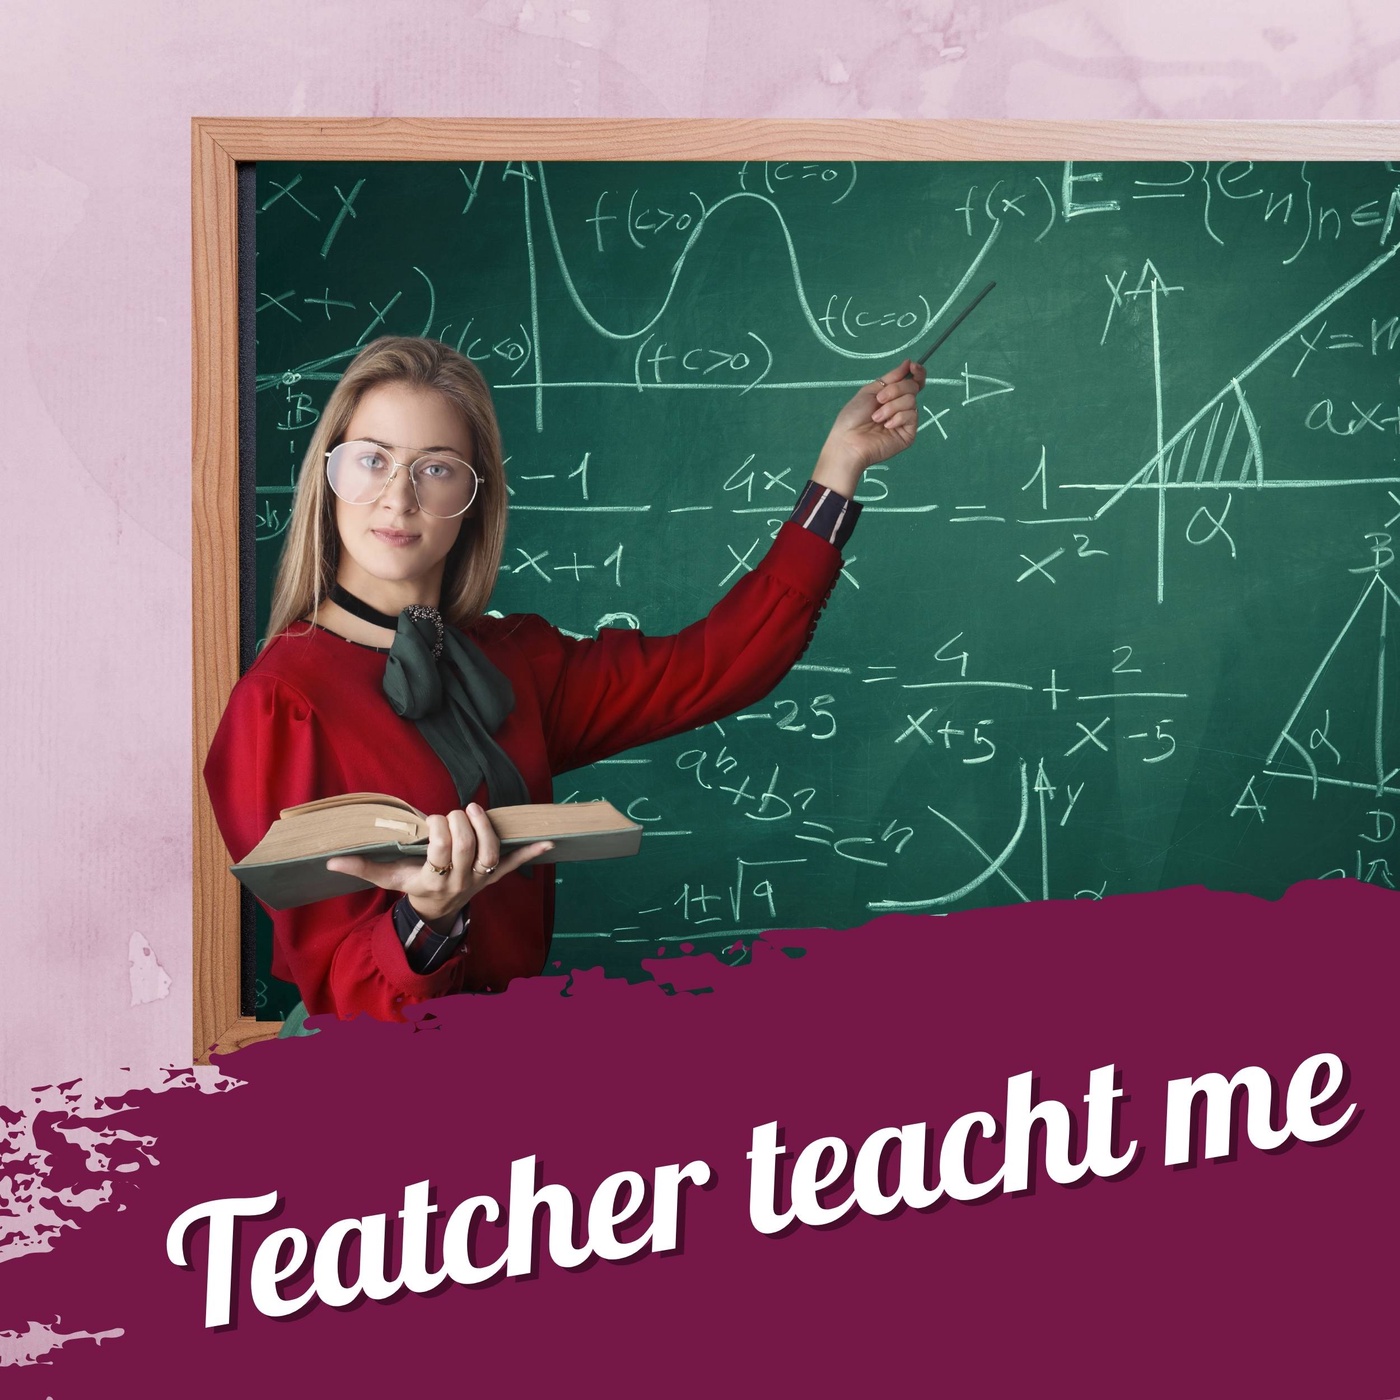 #123 – Teacher teach me